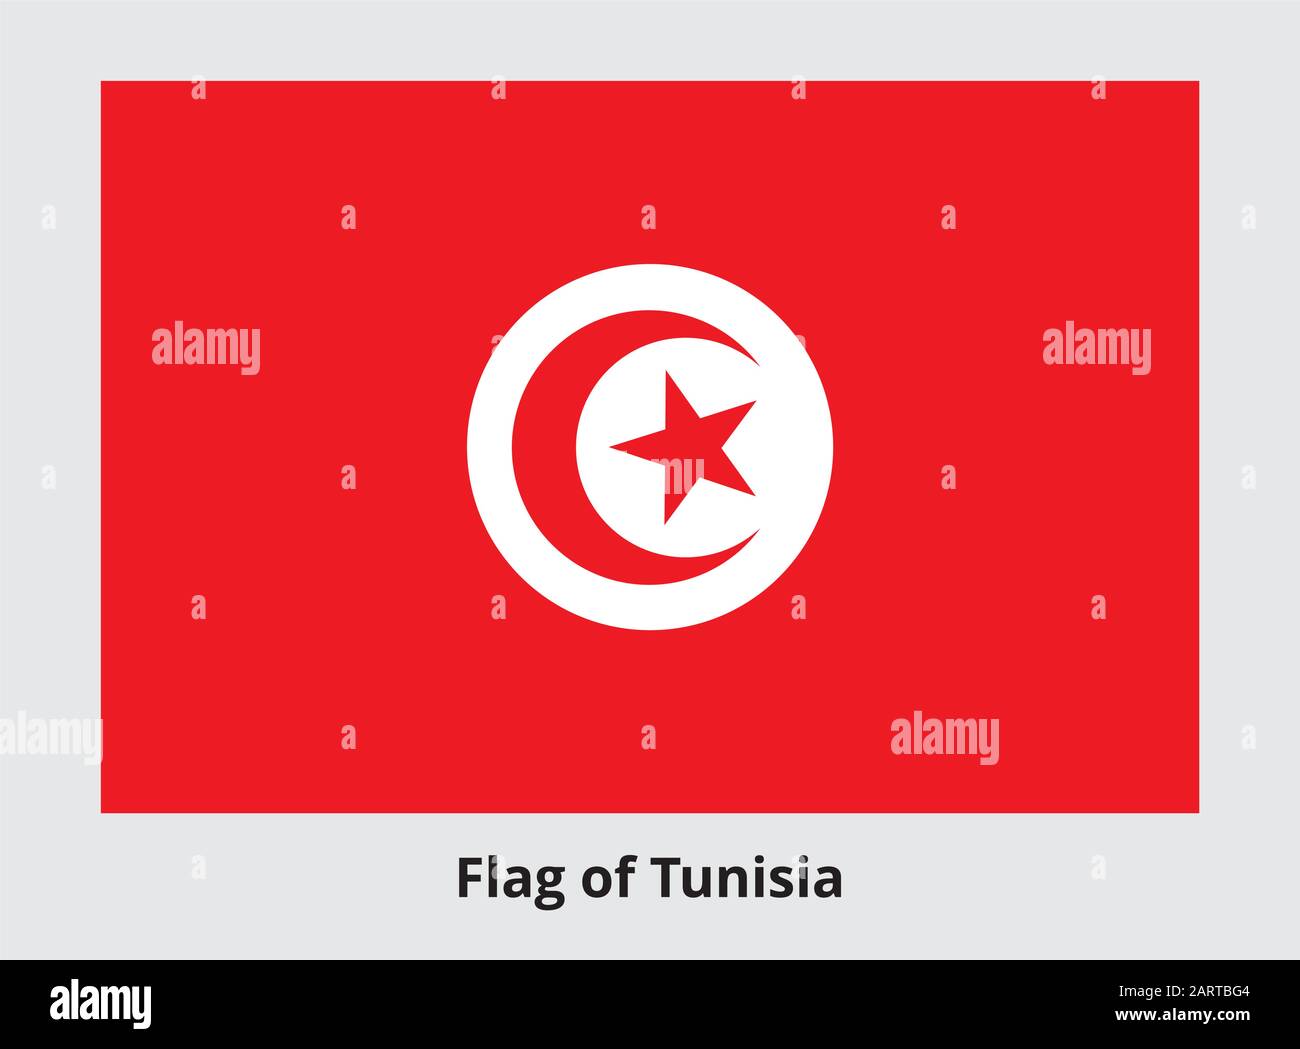 Bandiera della Tunisia. Banner rettangolare con la stella a cinque punte che circonda la mezzaluna al centro. Simbolo di stato tunisino. Colori e proporzioni corretti. V Illustrazione Vettoriale